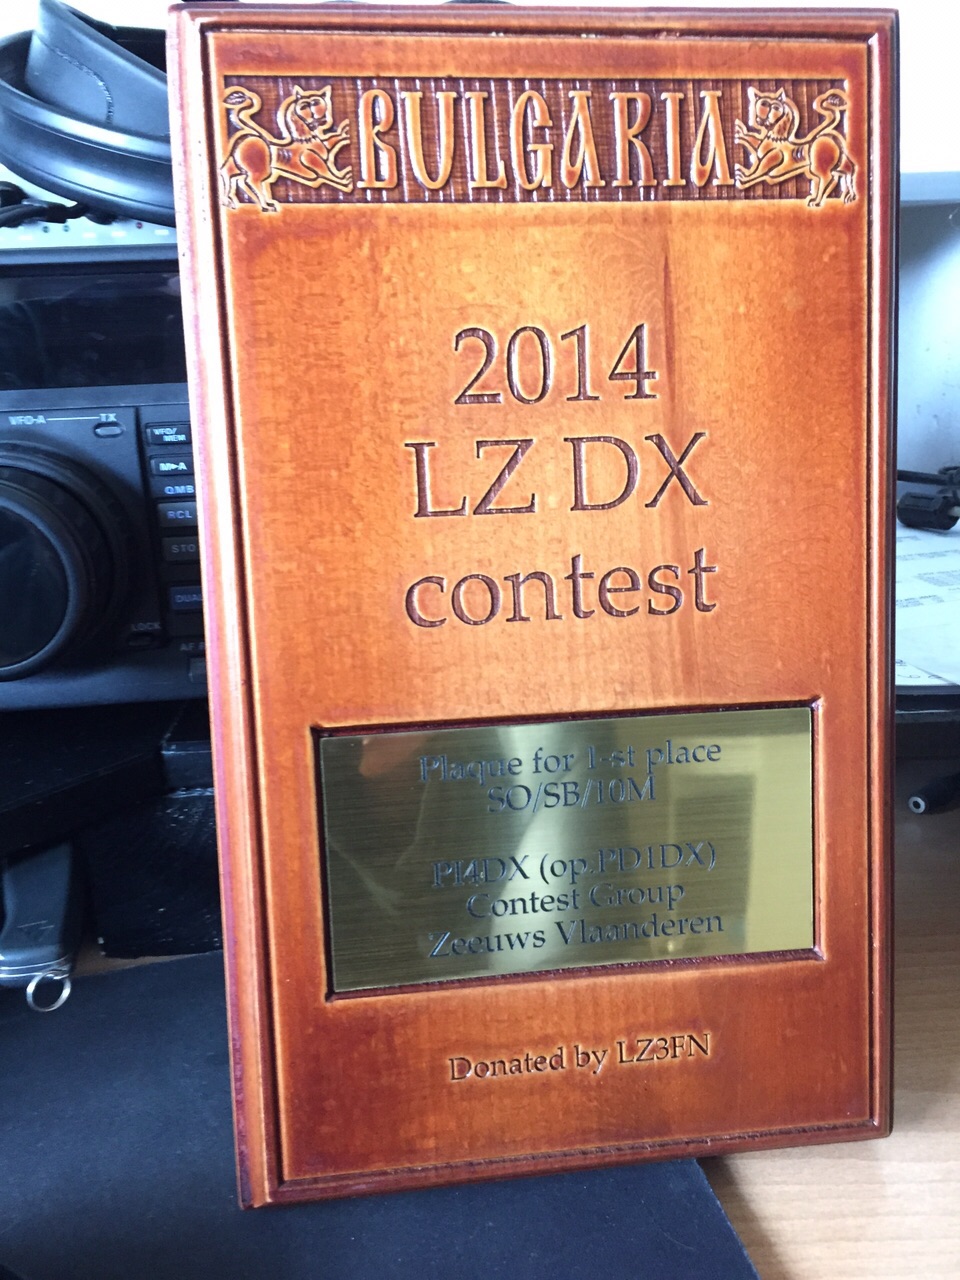 2014 LZ DX pi4dx